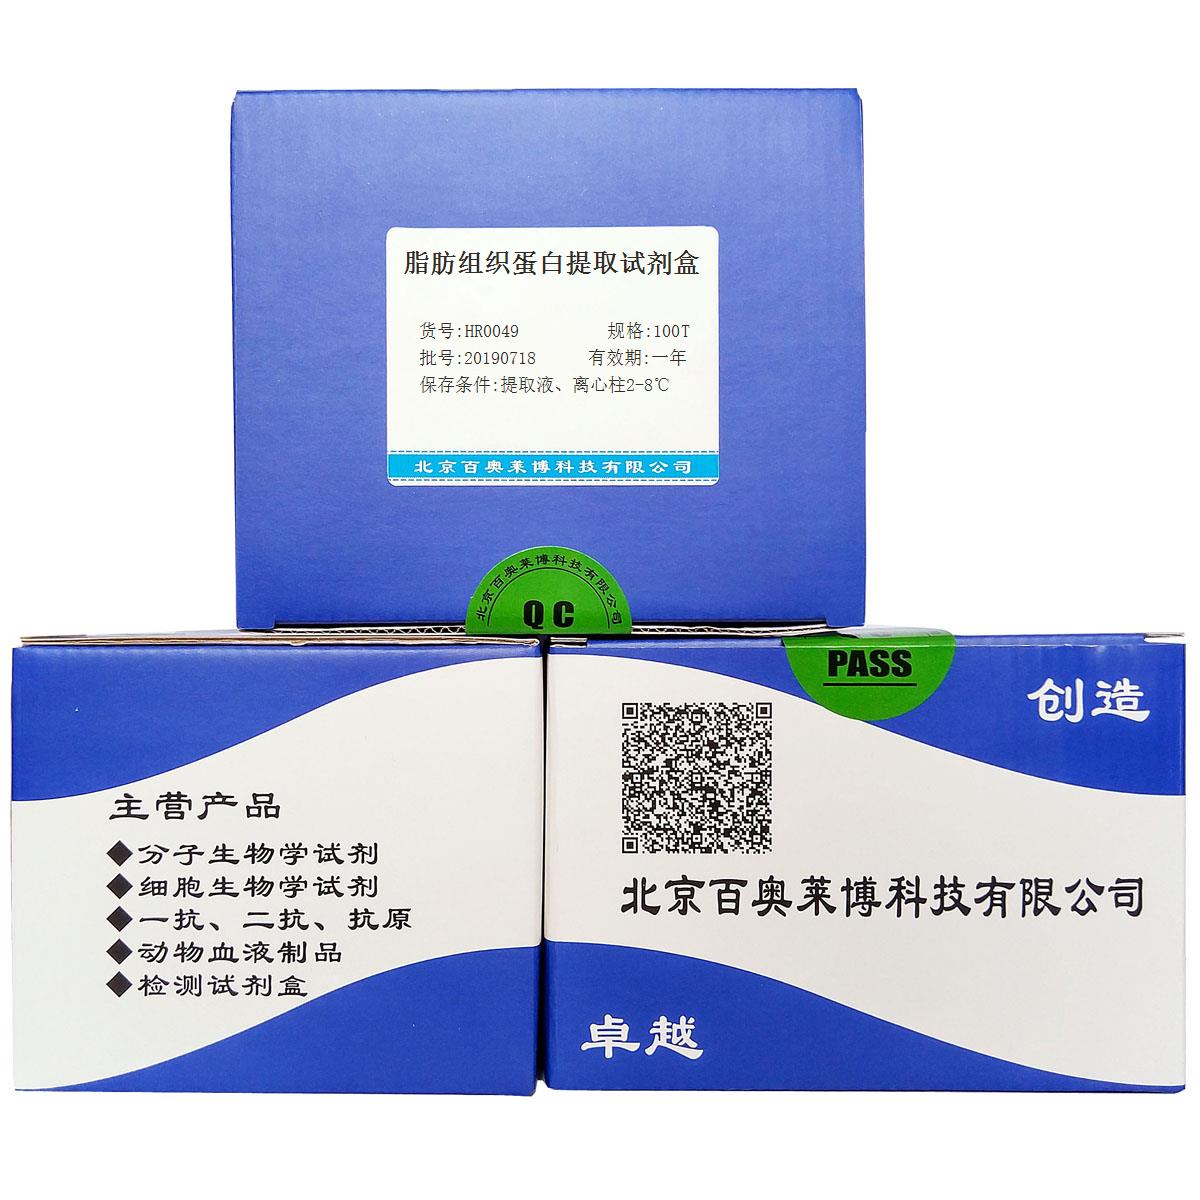 脂肪组织蛋白提取试剂盒北京现货